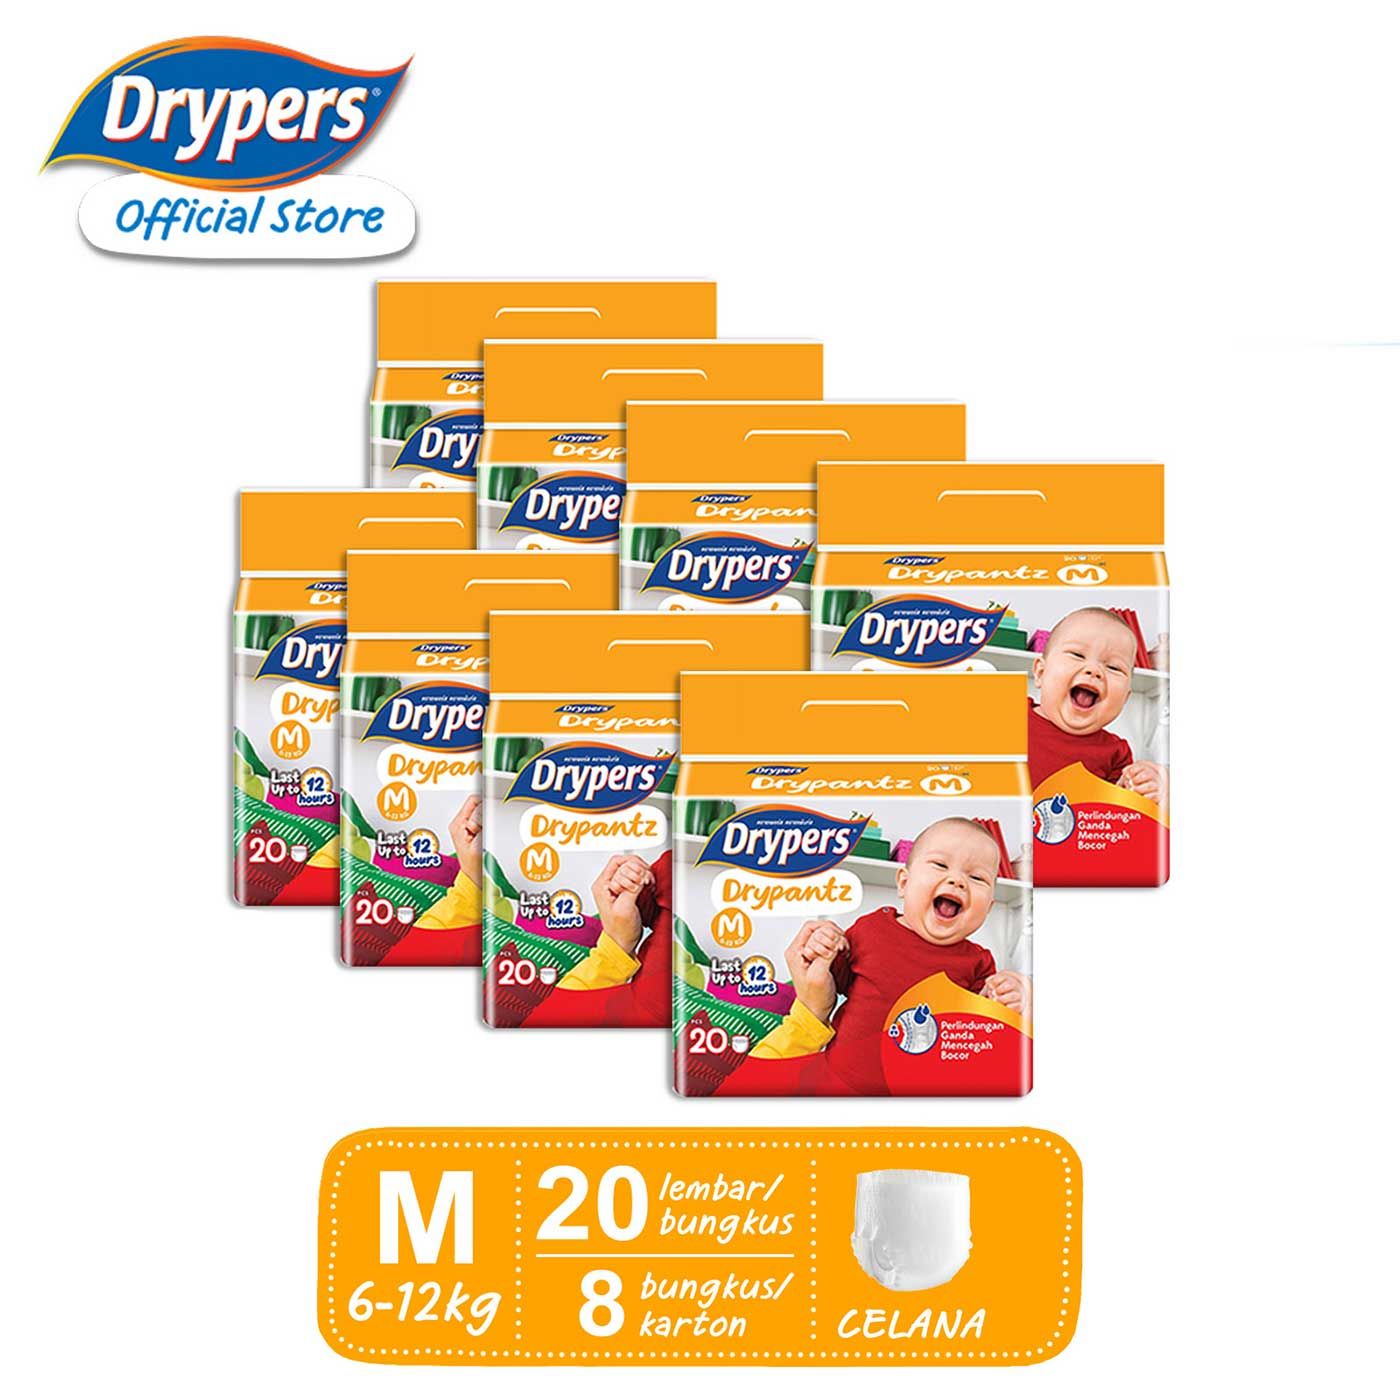 Drypers Drypantz Celana Popok -  M 20 - 2